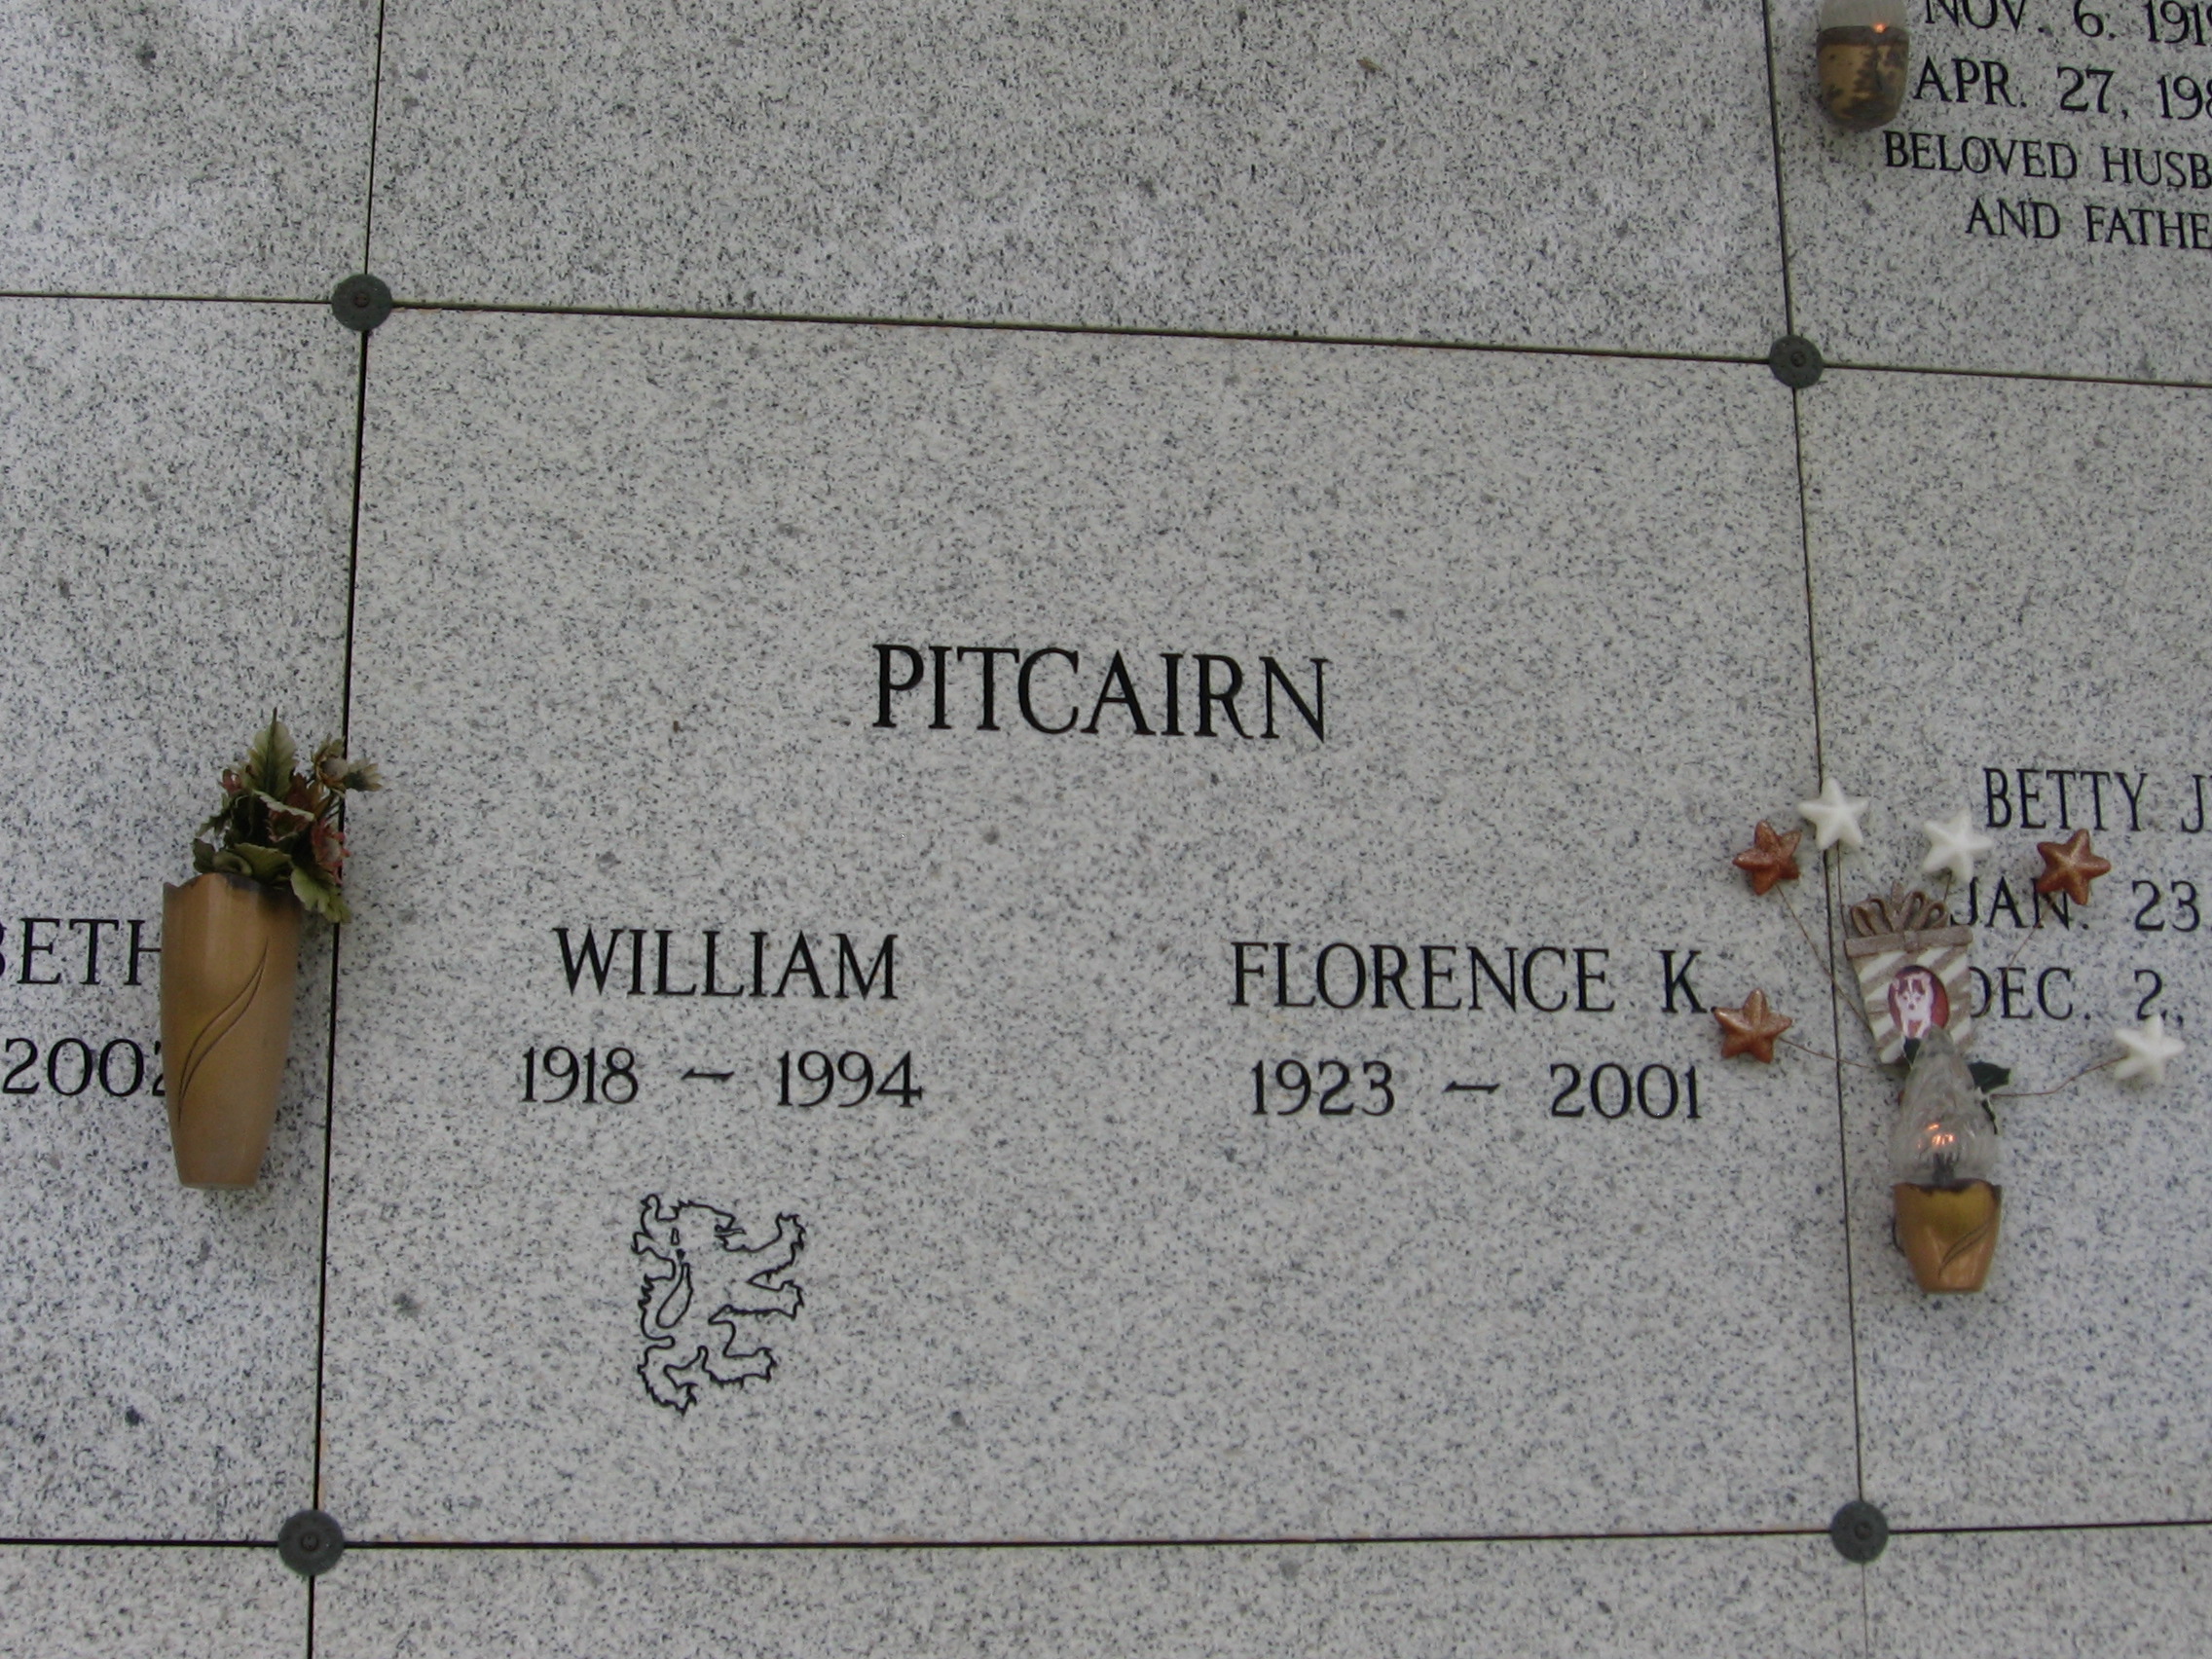 William Pitcairn